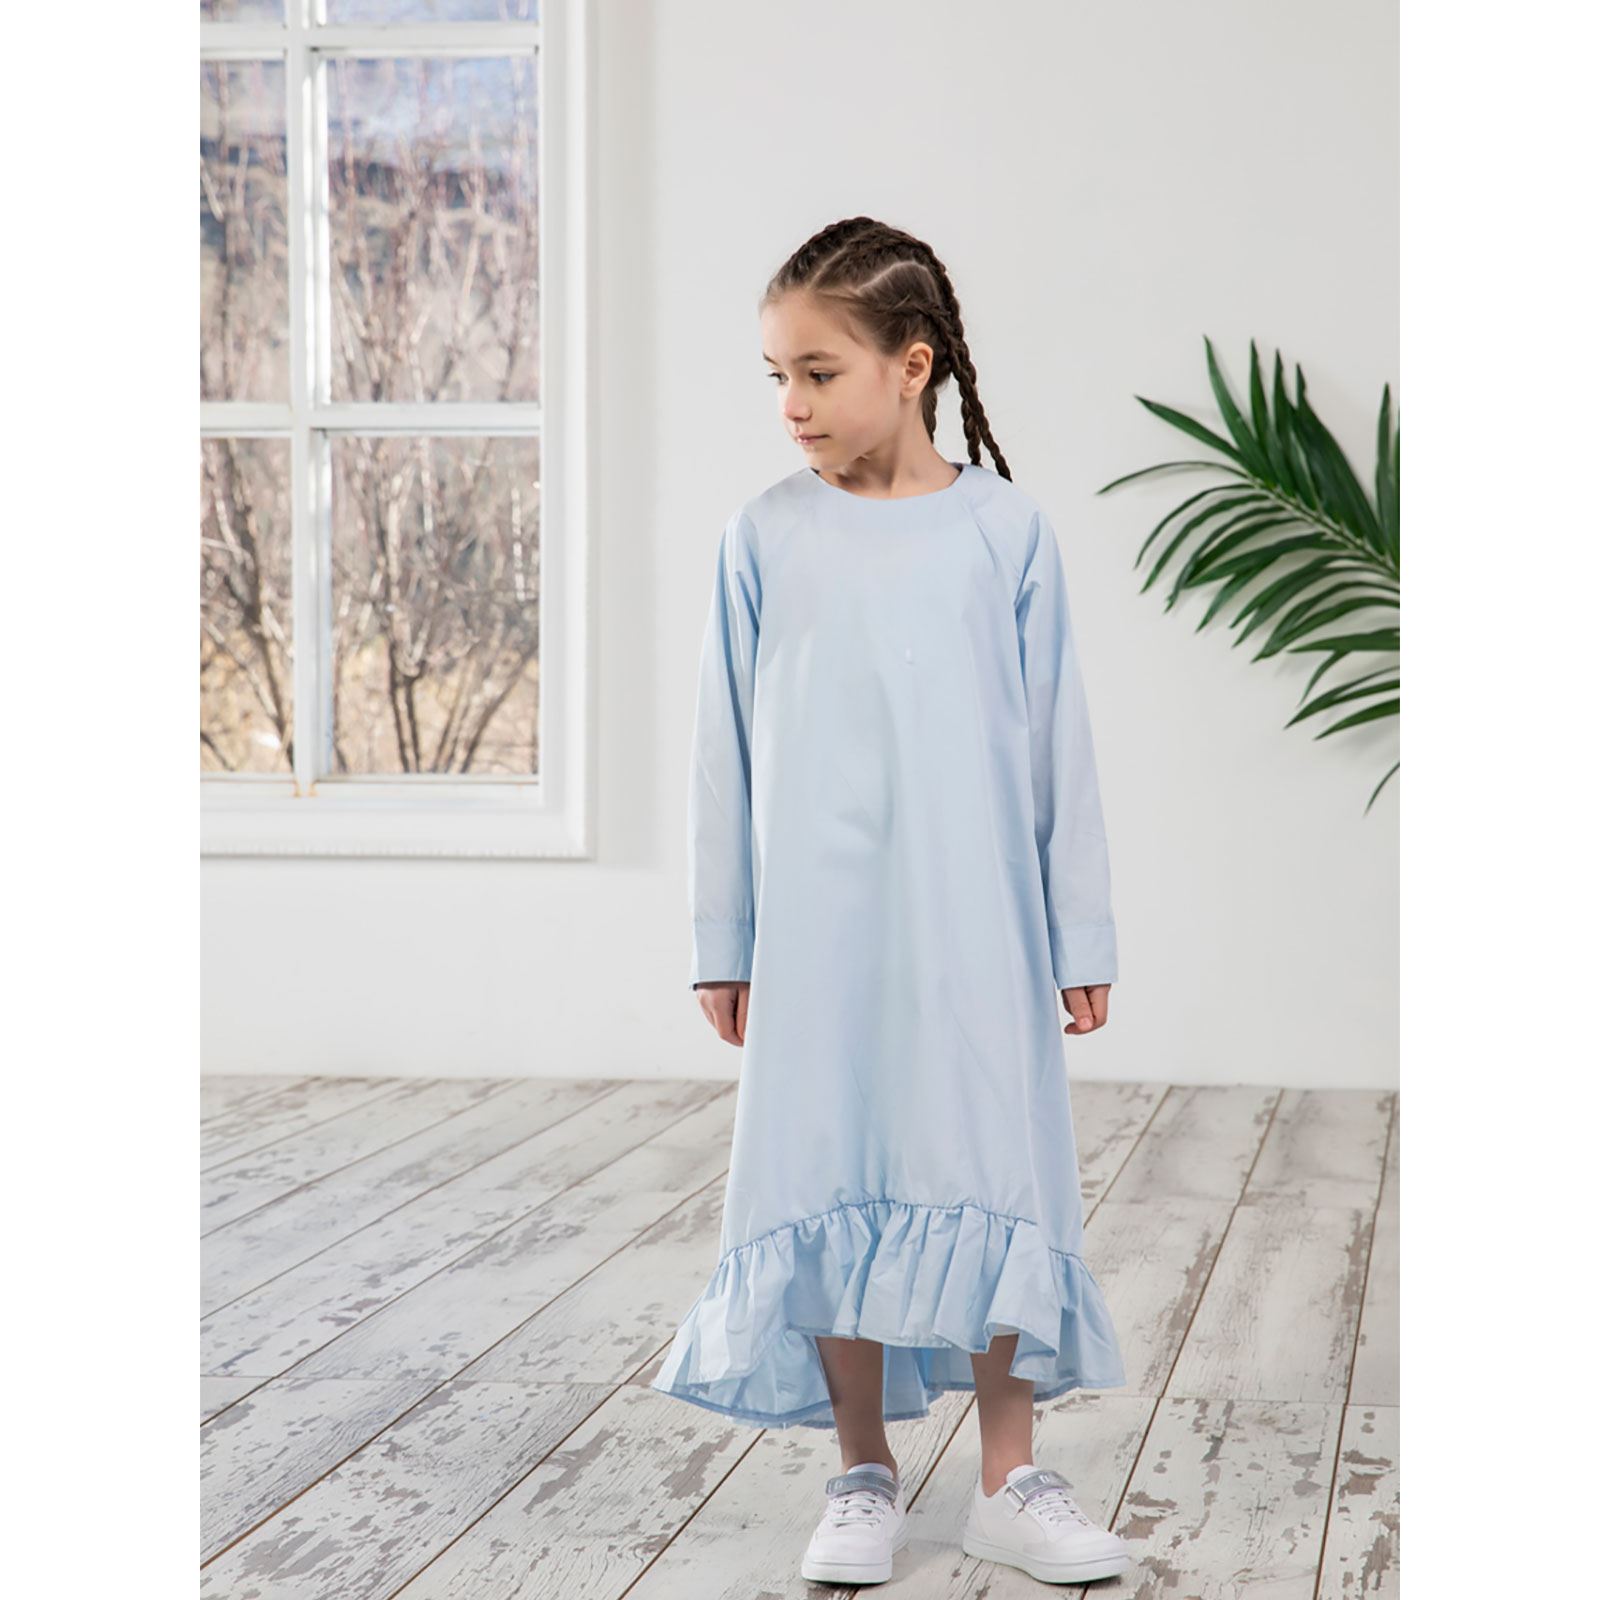 Burqa Bala Kız Çocuk Nur Kız Elbise 6-12 Yaş Mavi